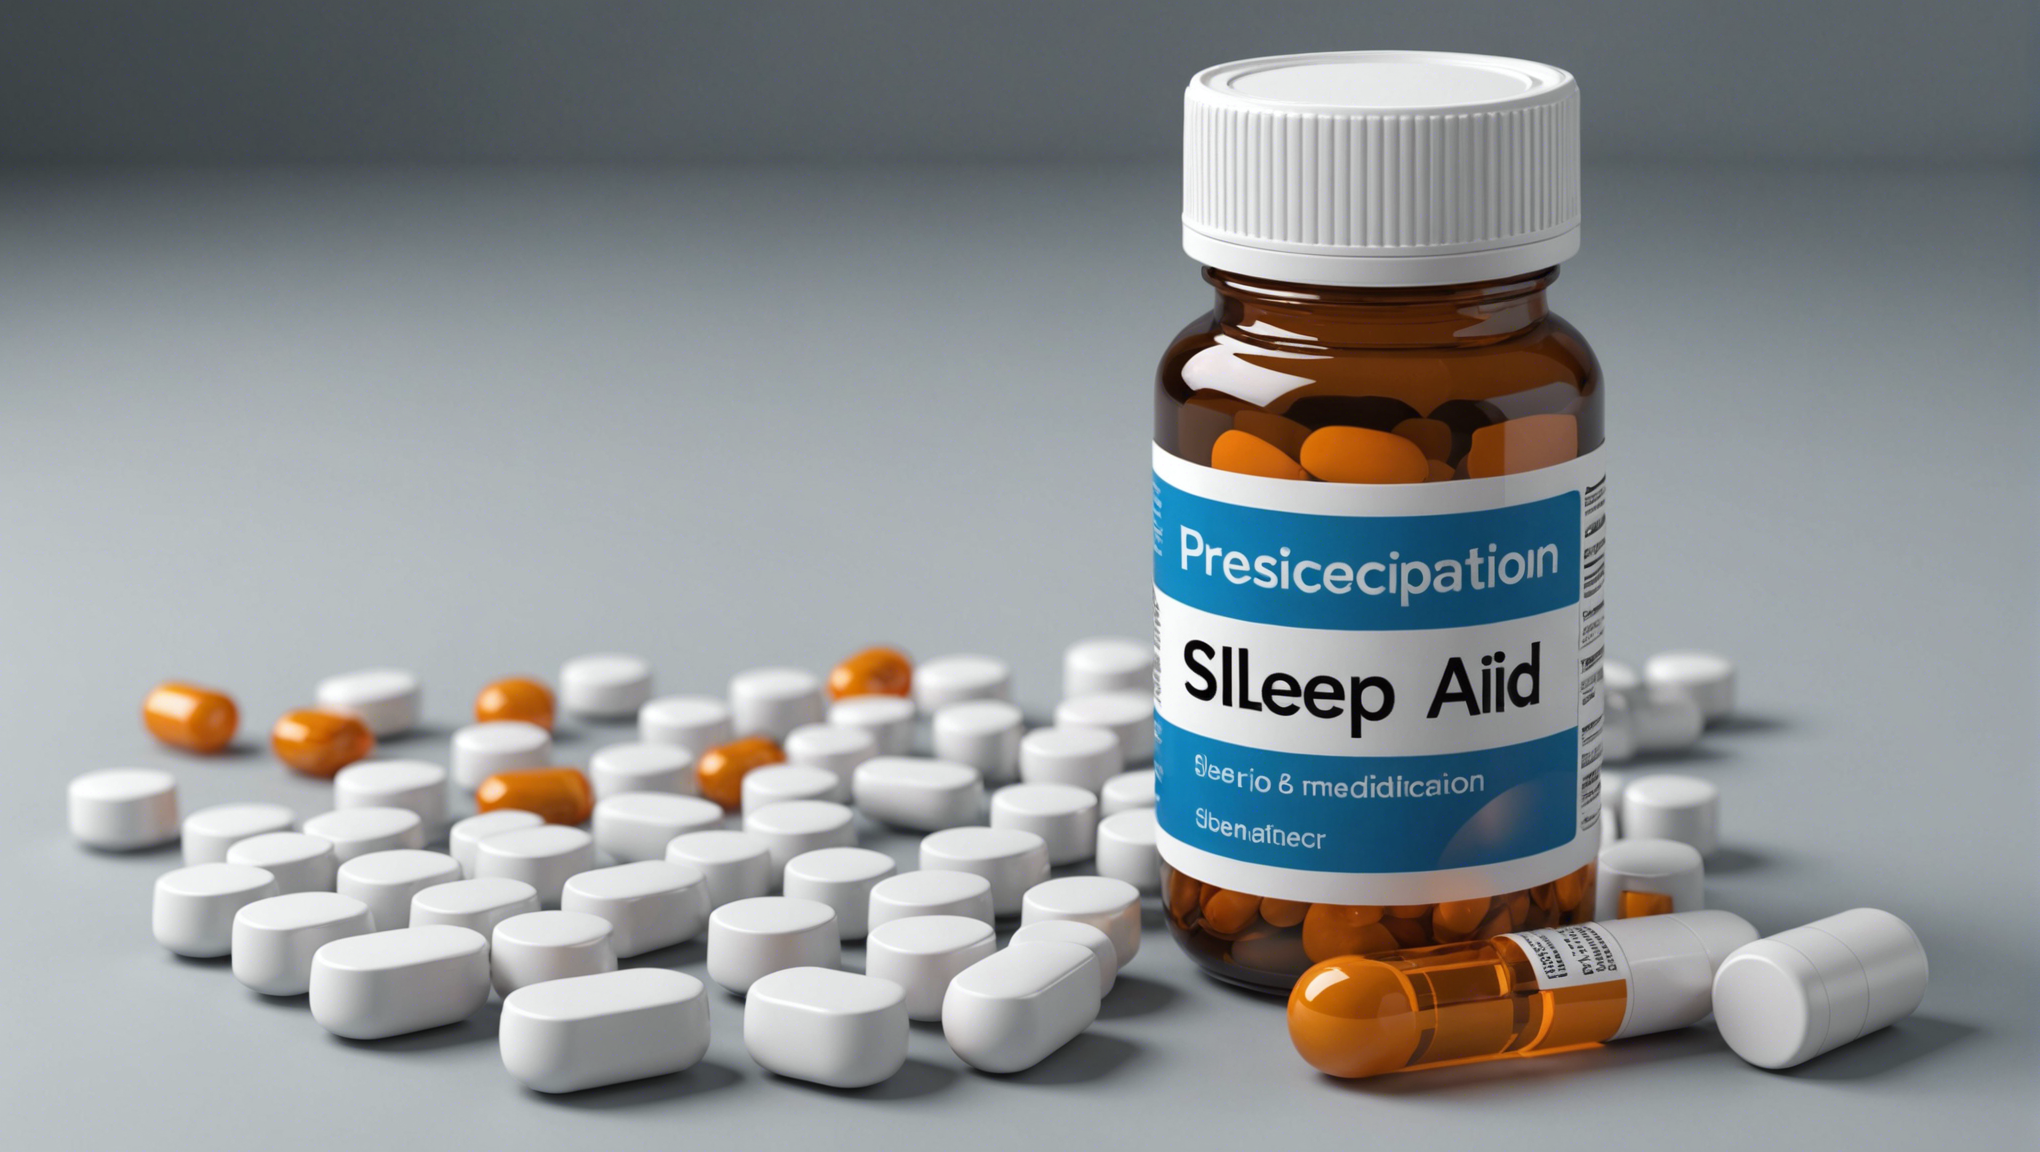 découvrez quel médicament sur ordonnance choisir pour améliorer votre sommeil et retrouver des nuits paisibles avec nos conseils et recommandations.